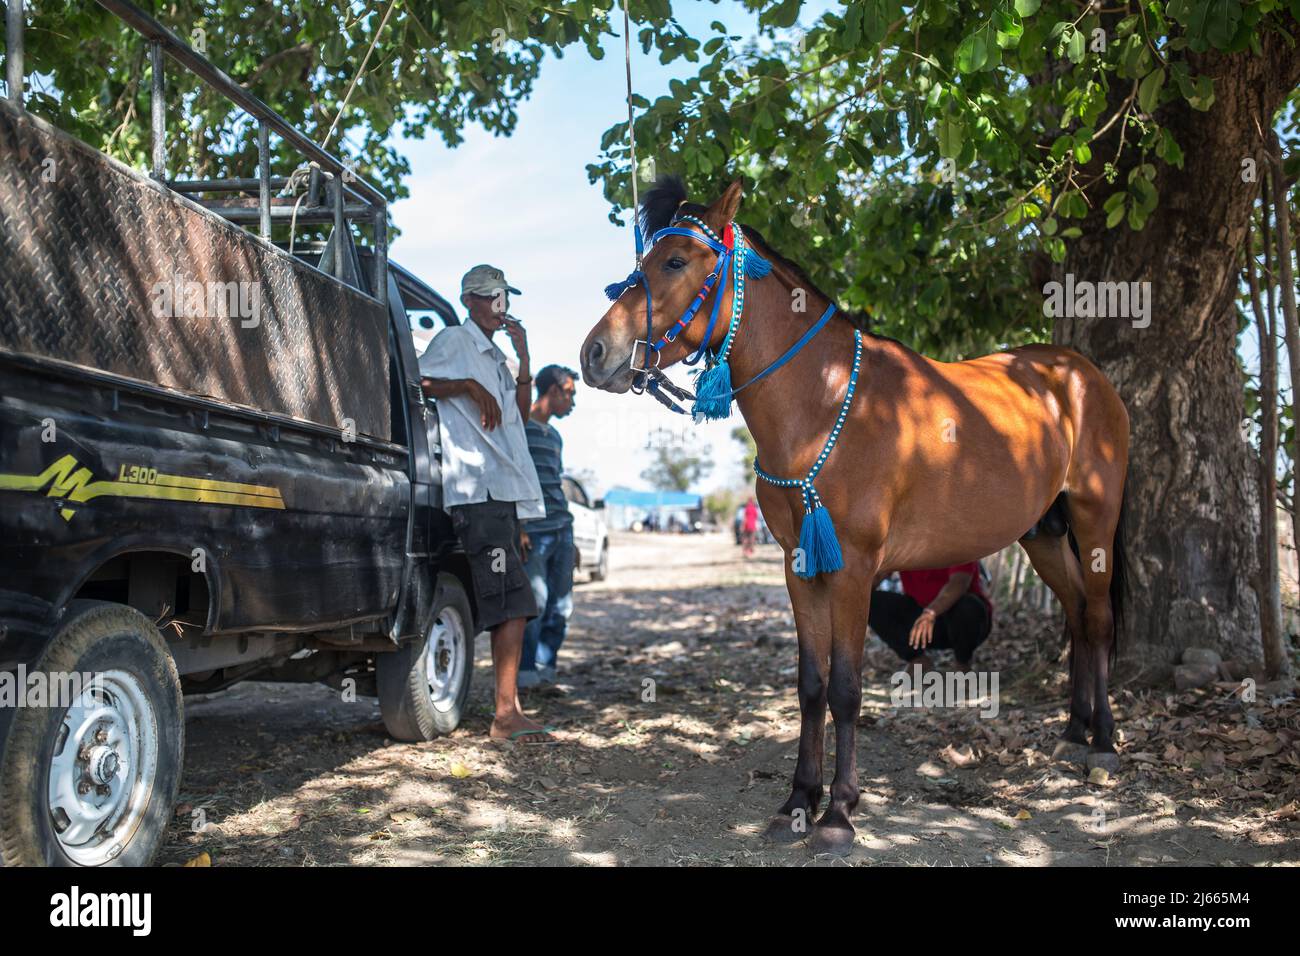 Sumbawa Besar, Indonesia - September 16, 2017: Horse racing in Sumbawa Besar, Indonesia. Stock Photo